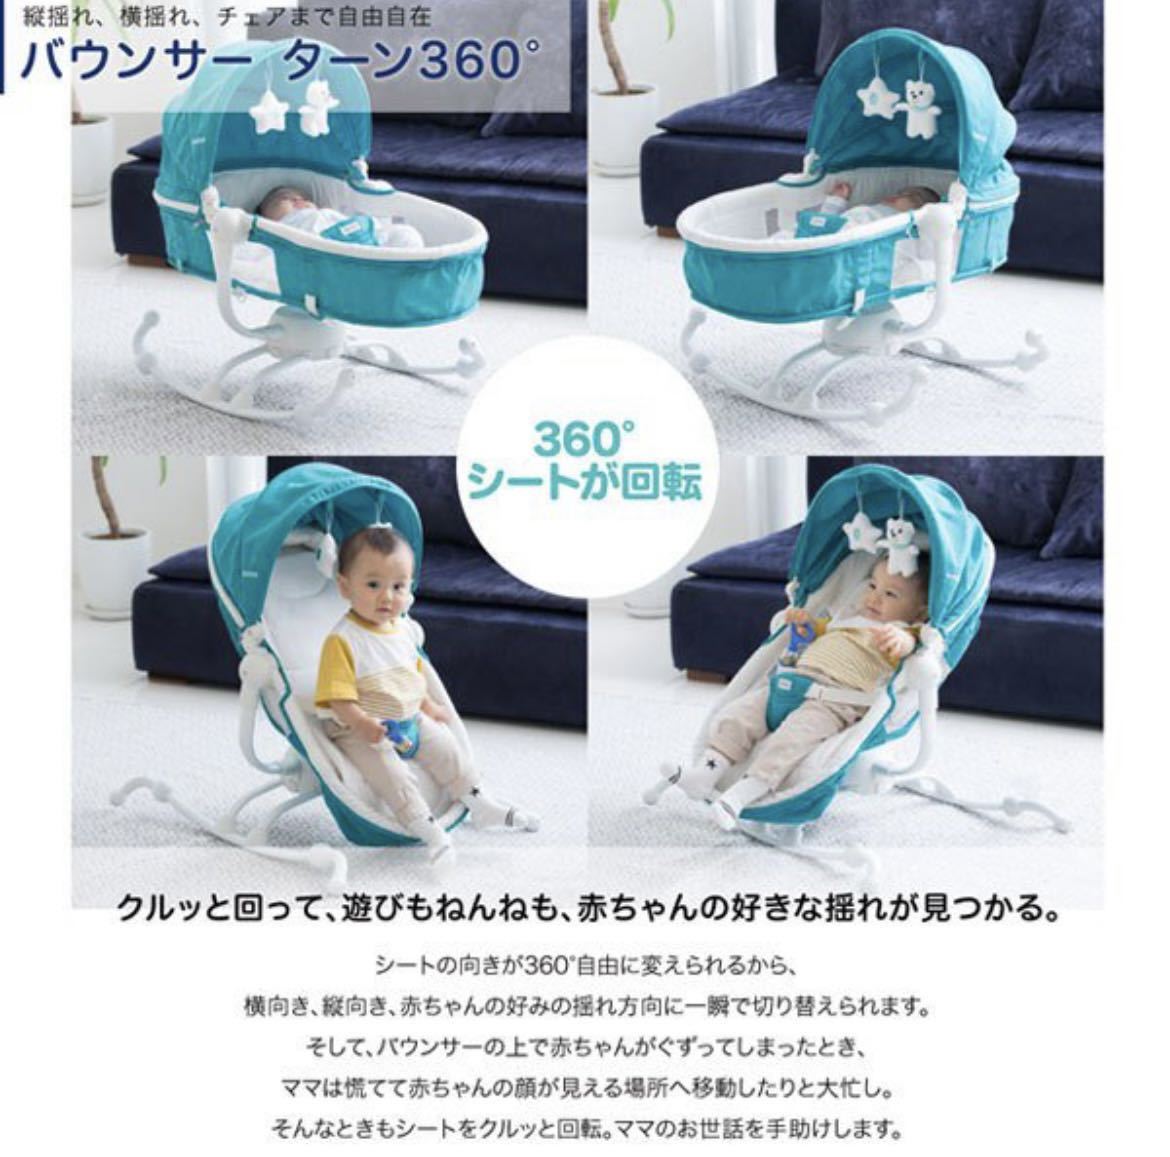  Kato jiKATOJI bouncer baby bouncer Turn 360° gray reversible cushion newborn baby 